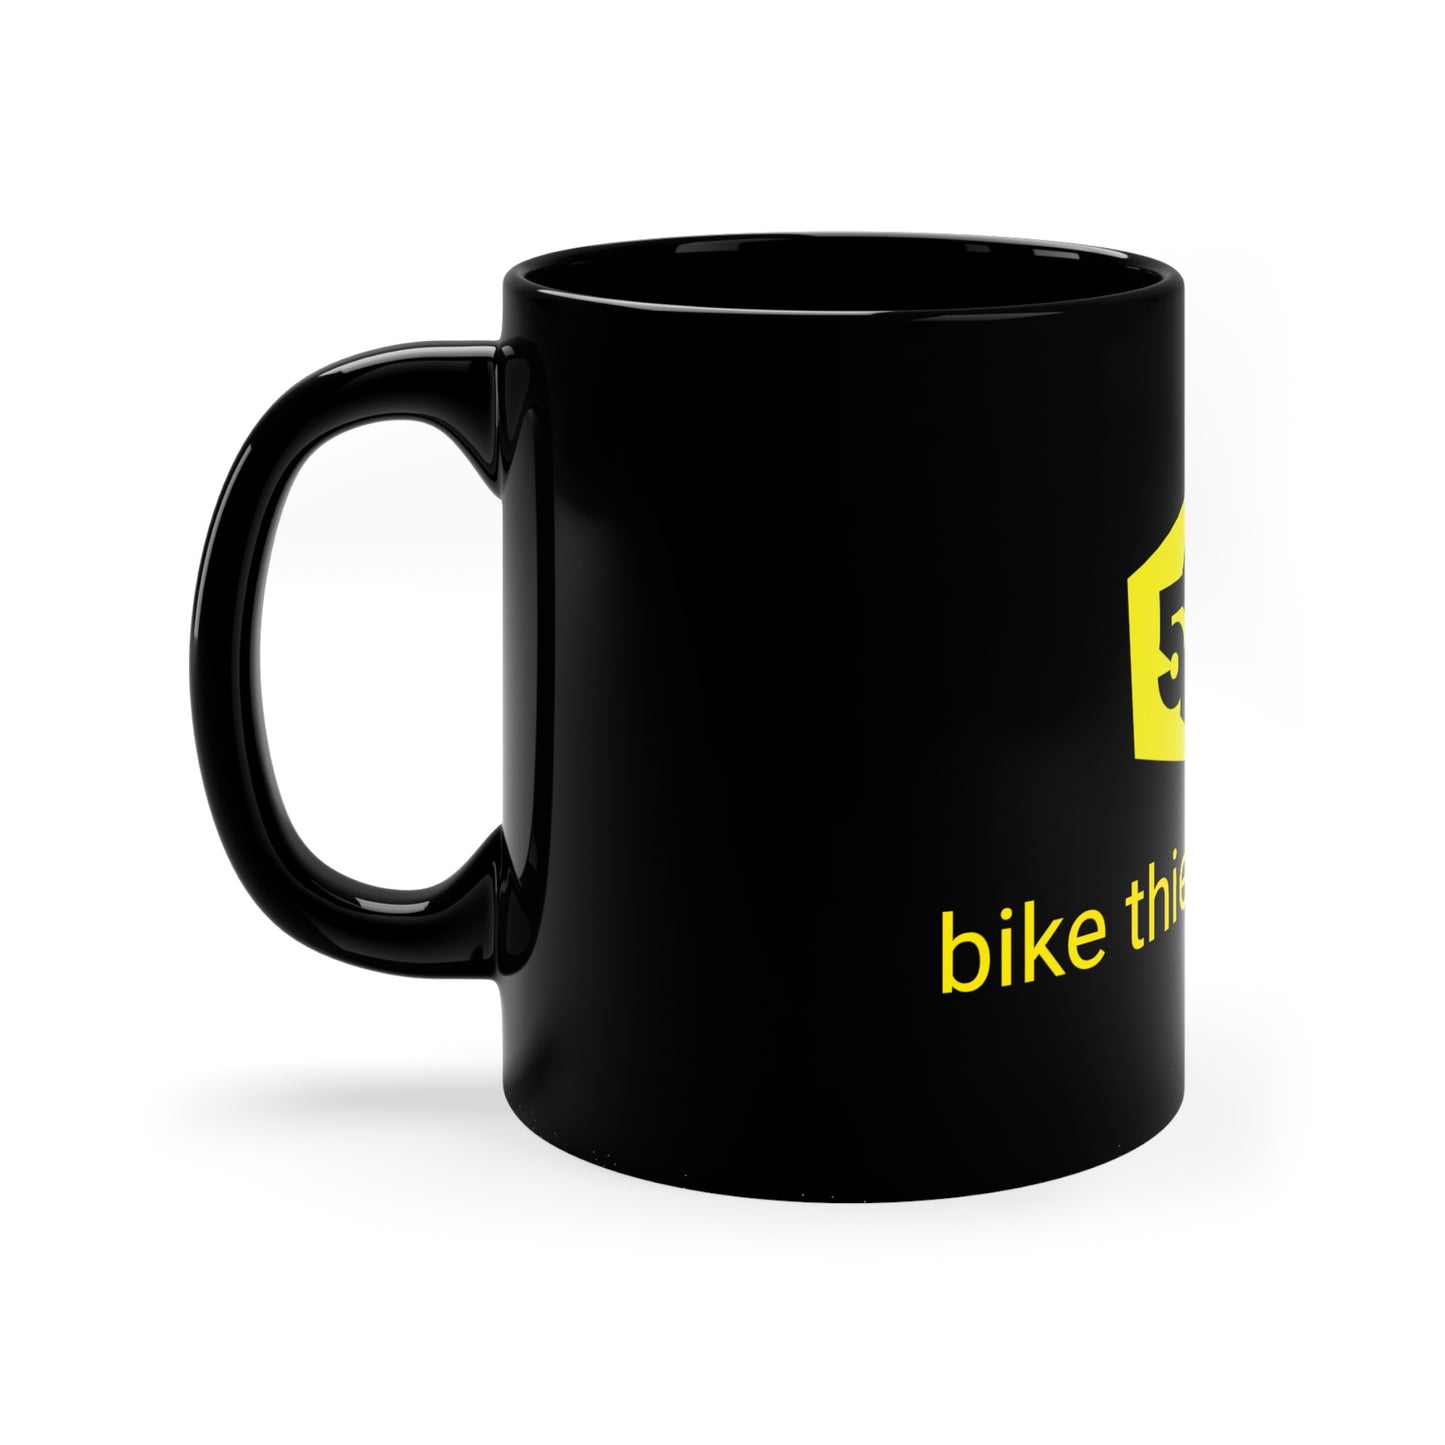 "Bike thieves suck" -  Mug à café